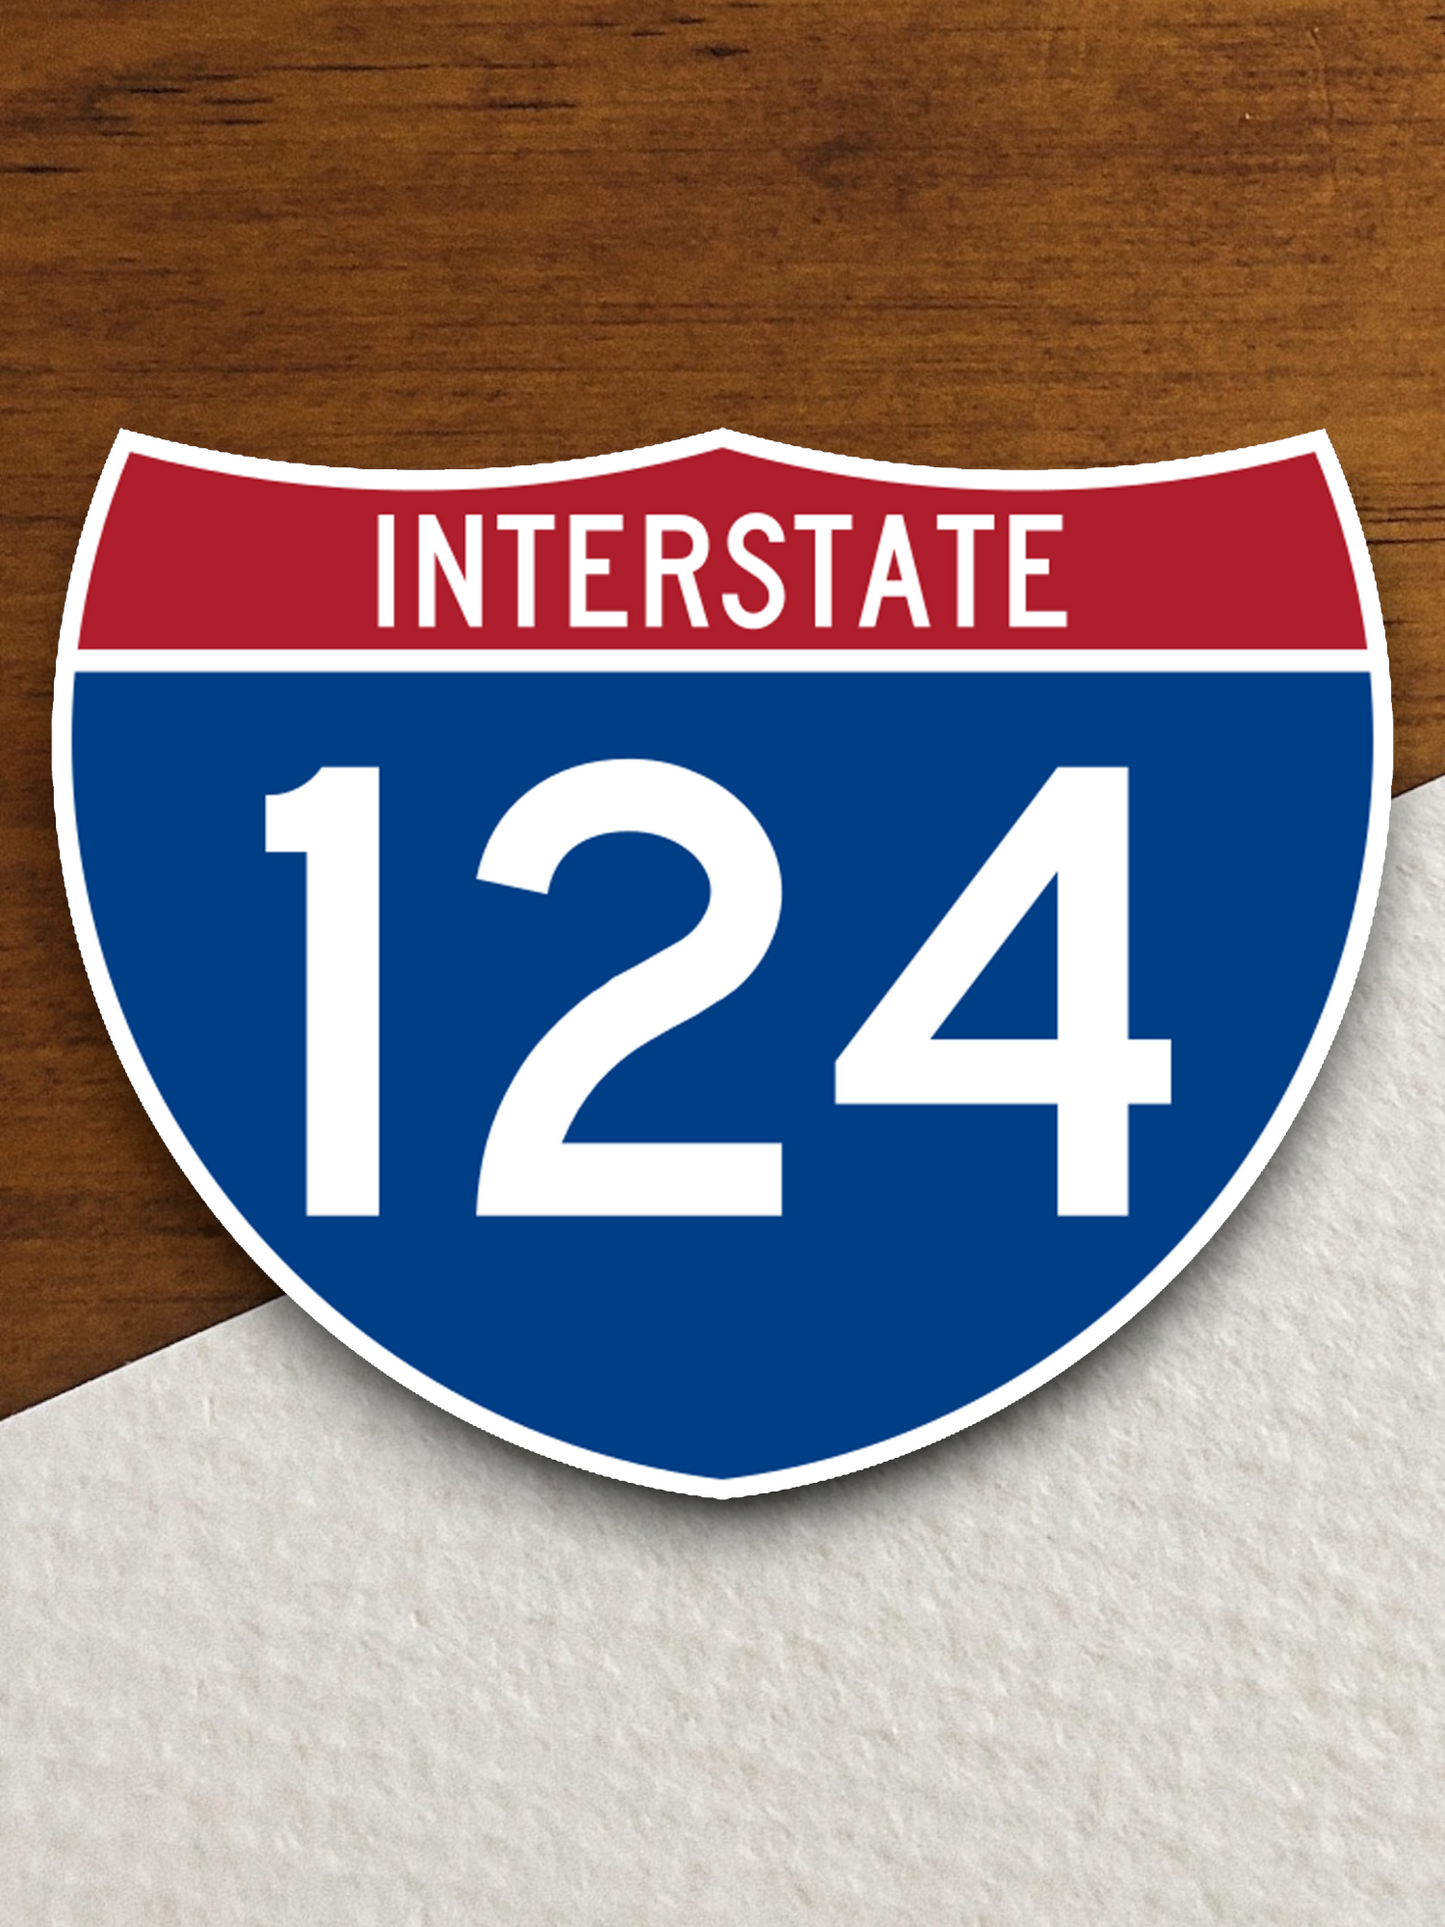 Interstate I-124 Sticker